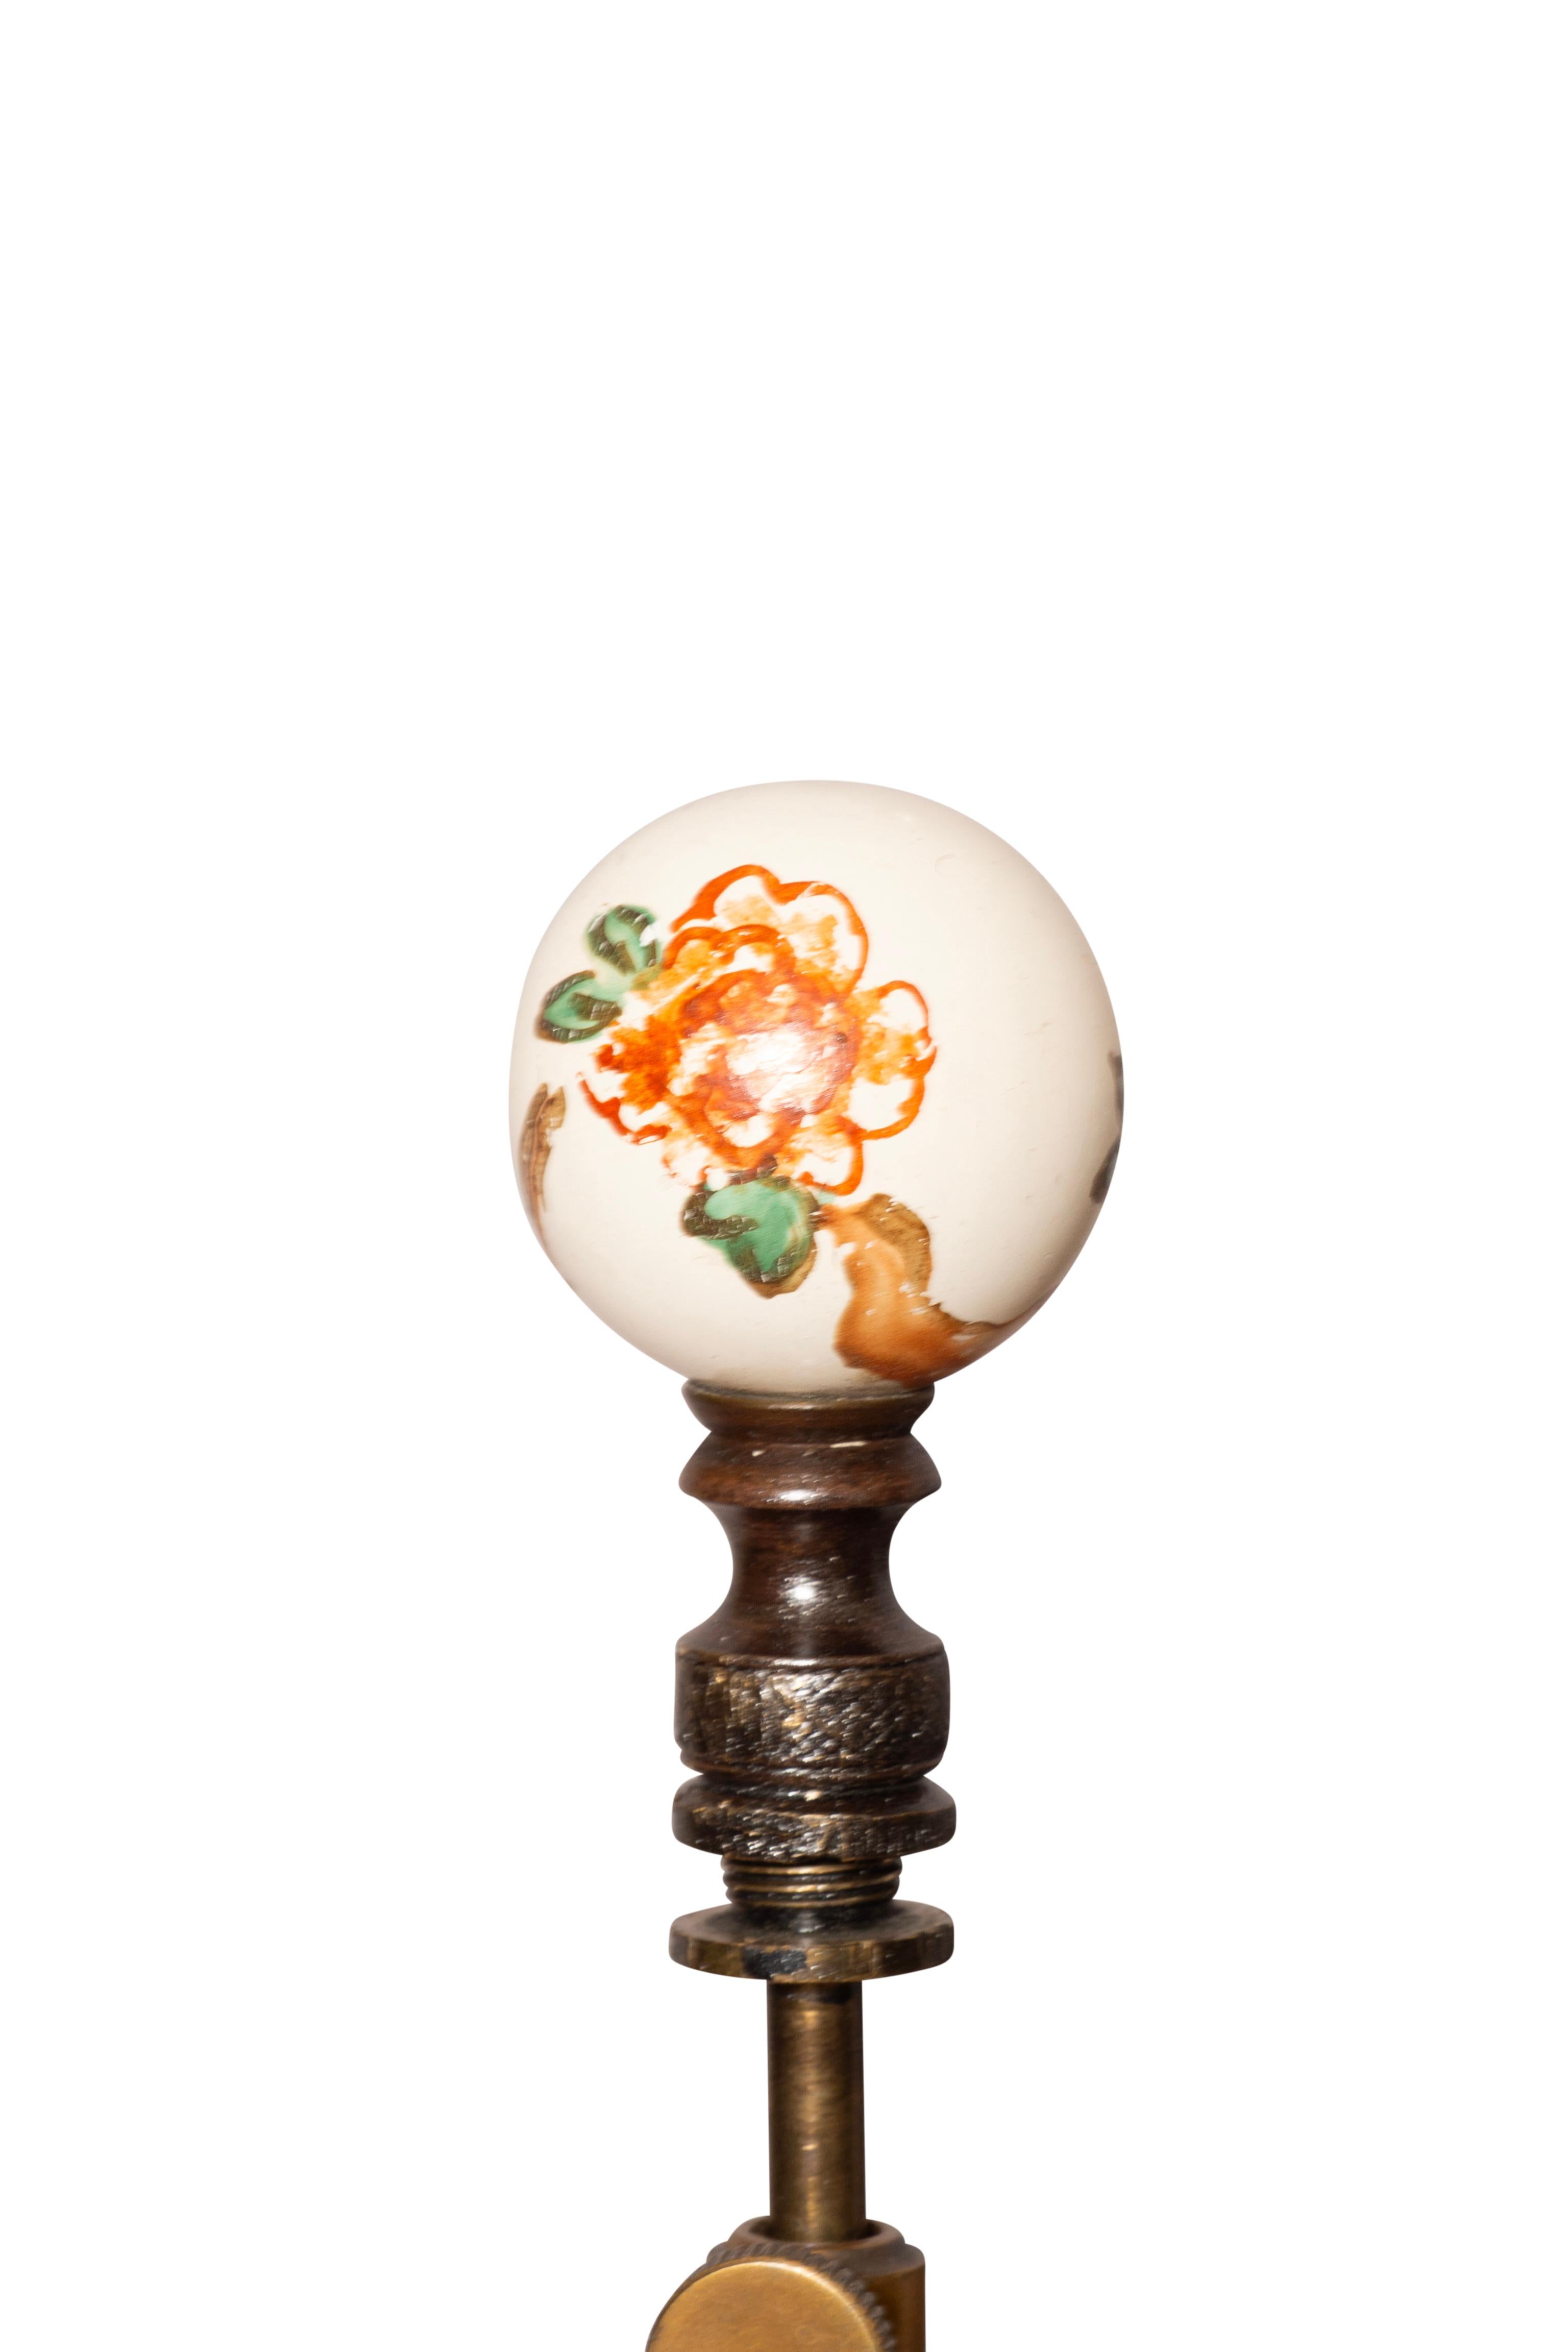 Lampes intéressantes avec un pot à gingembre central en porcelaine avec un décor de prunus et un couvercle avec une base en bois sculptée et peinte pour s'accorder et se fondre avec la porcelaine. Une rallonge entre le couvercle et le haut du vase.